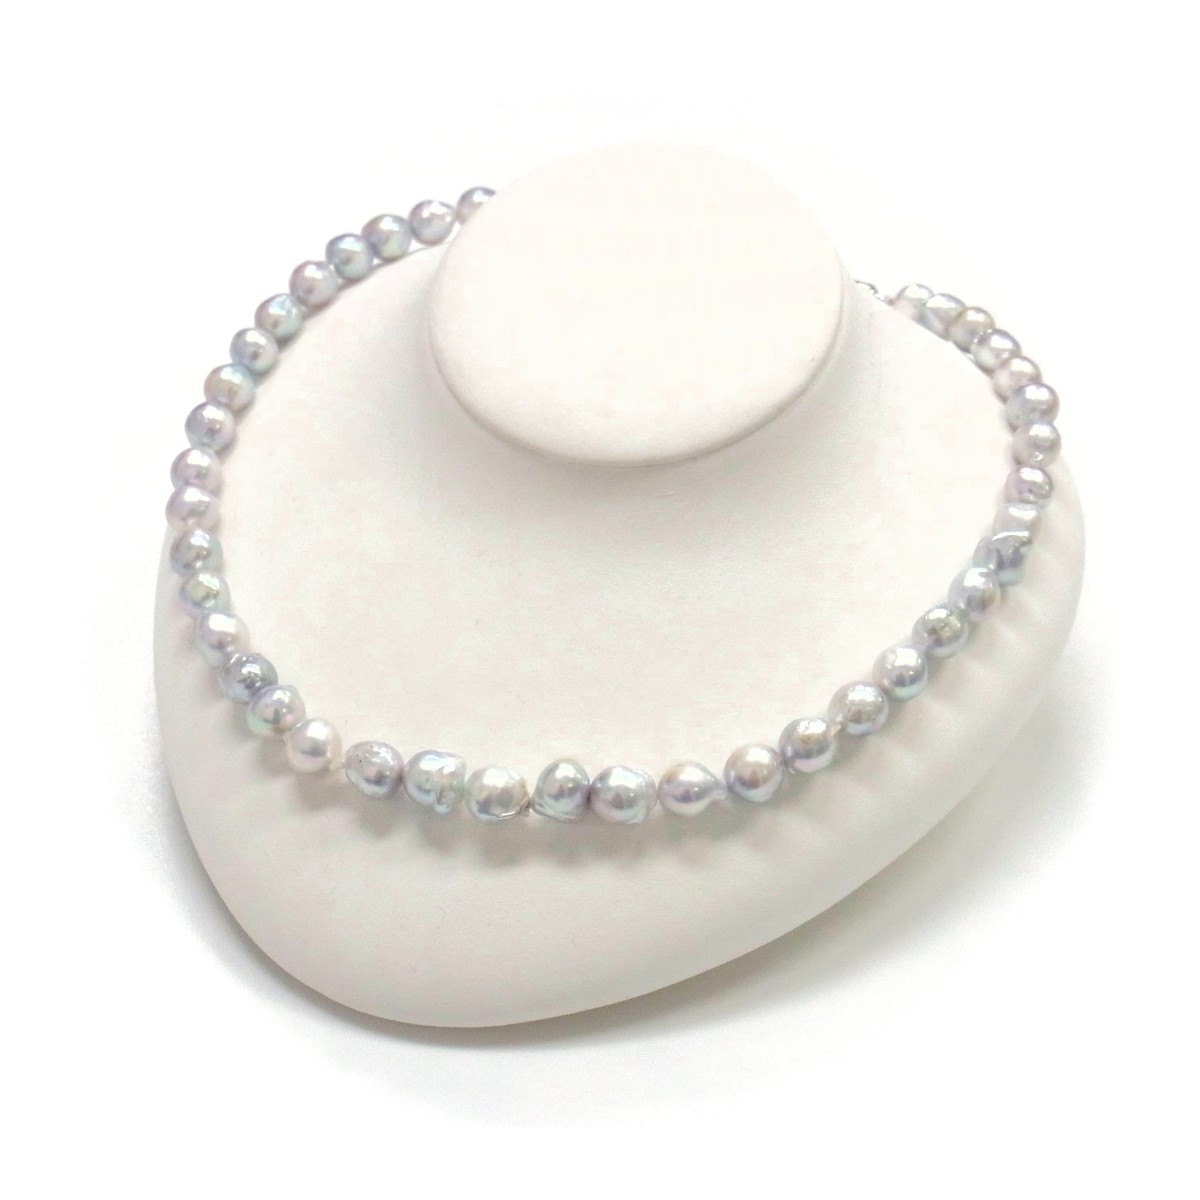 ★ナチュラルグレー 本真珠 ネックレス 指輪 イヤリングのセット 美品上代20万円のお品物です